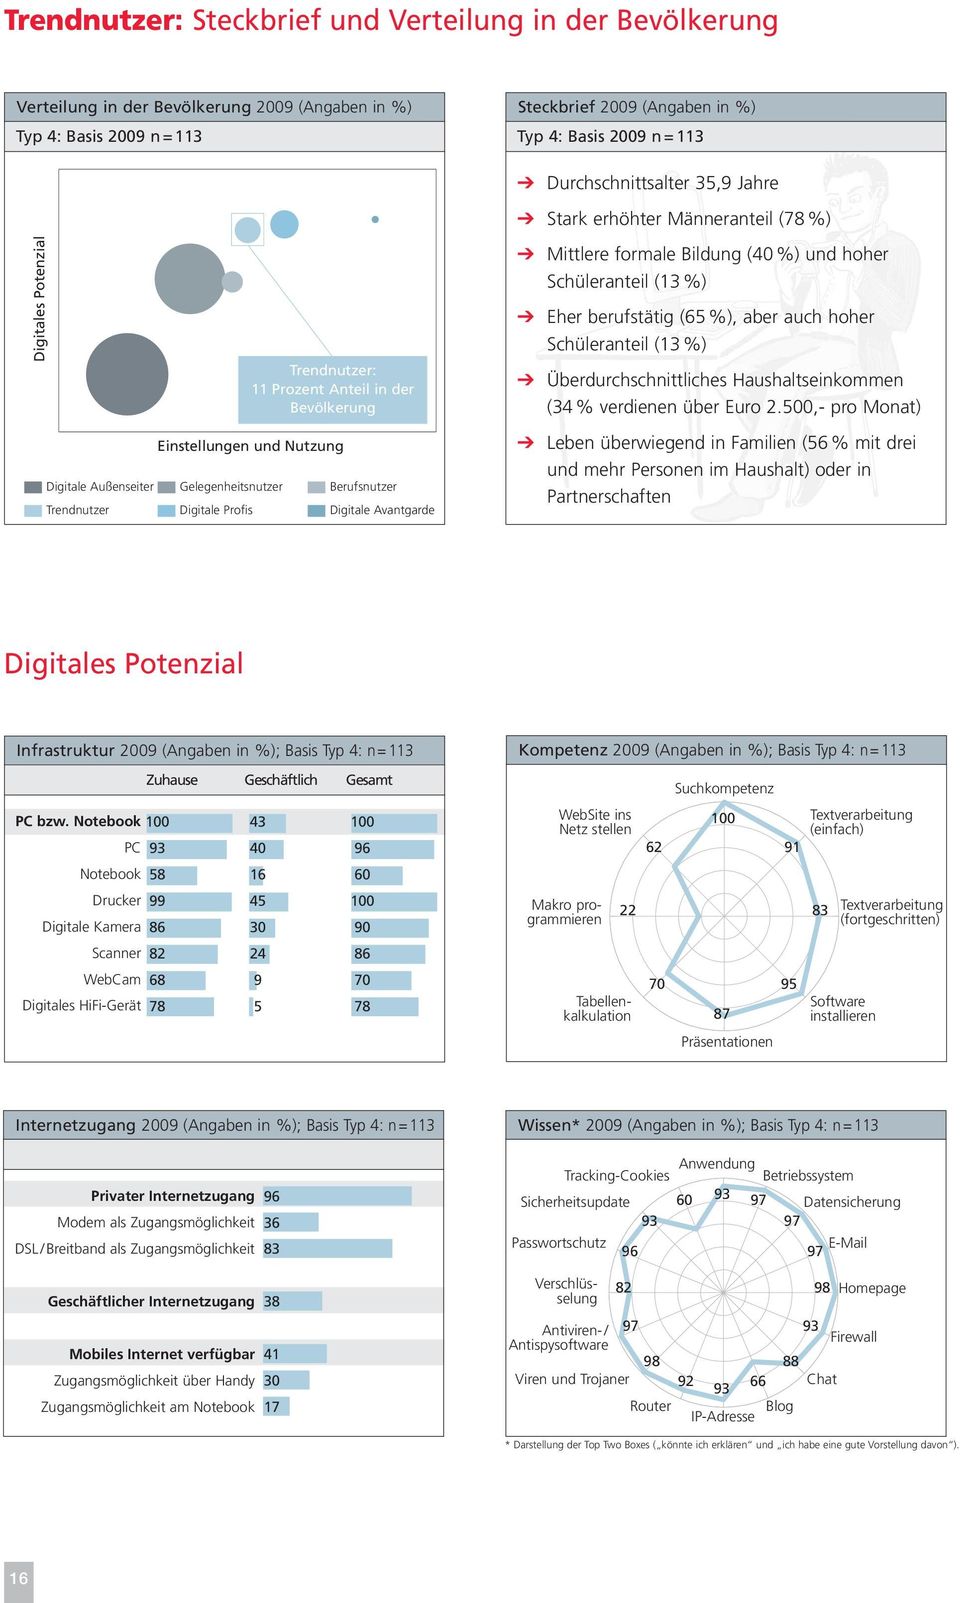 Trendnutzer Digitale Profis Digitale Avantgarde b Mittlere formale Bildung (40 %) und hoher Schüleranteil (13 %) b Eher berufstätig (65 %), aber auch hoher Schüleranteil (13 %) b